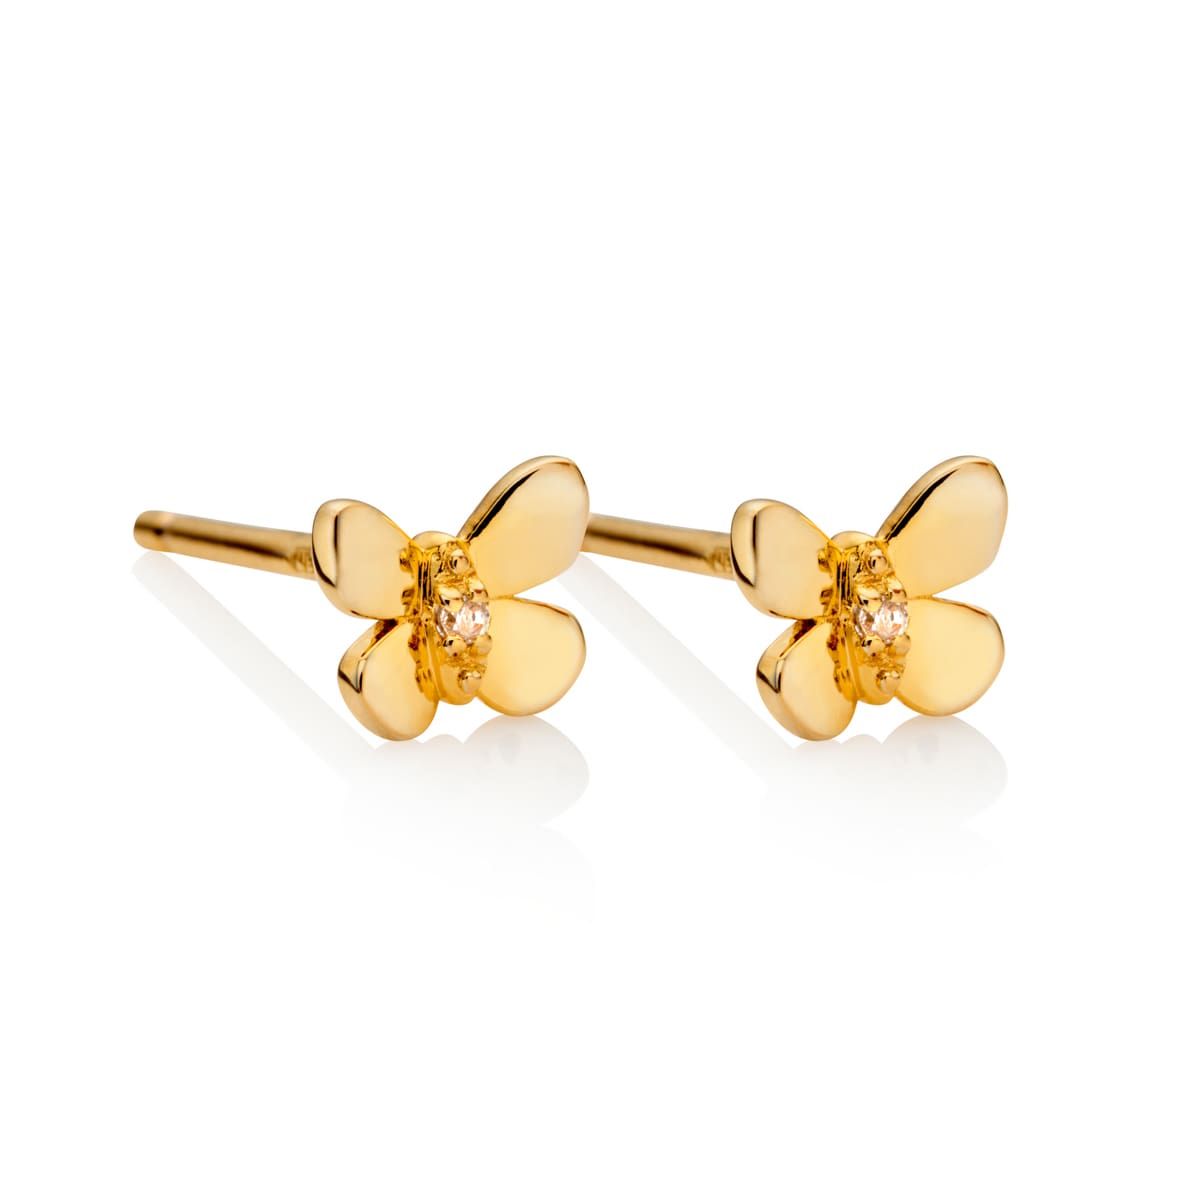 14k Yellow Gold Children's Butterfly Post Earrings 6mm x 8mm Madi K Kids  Jewelry | eBay